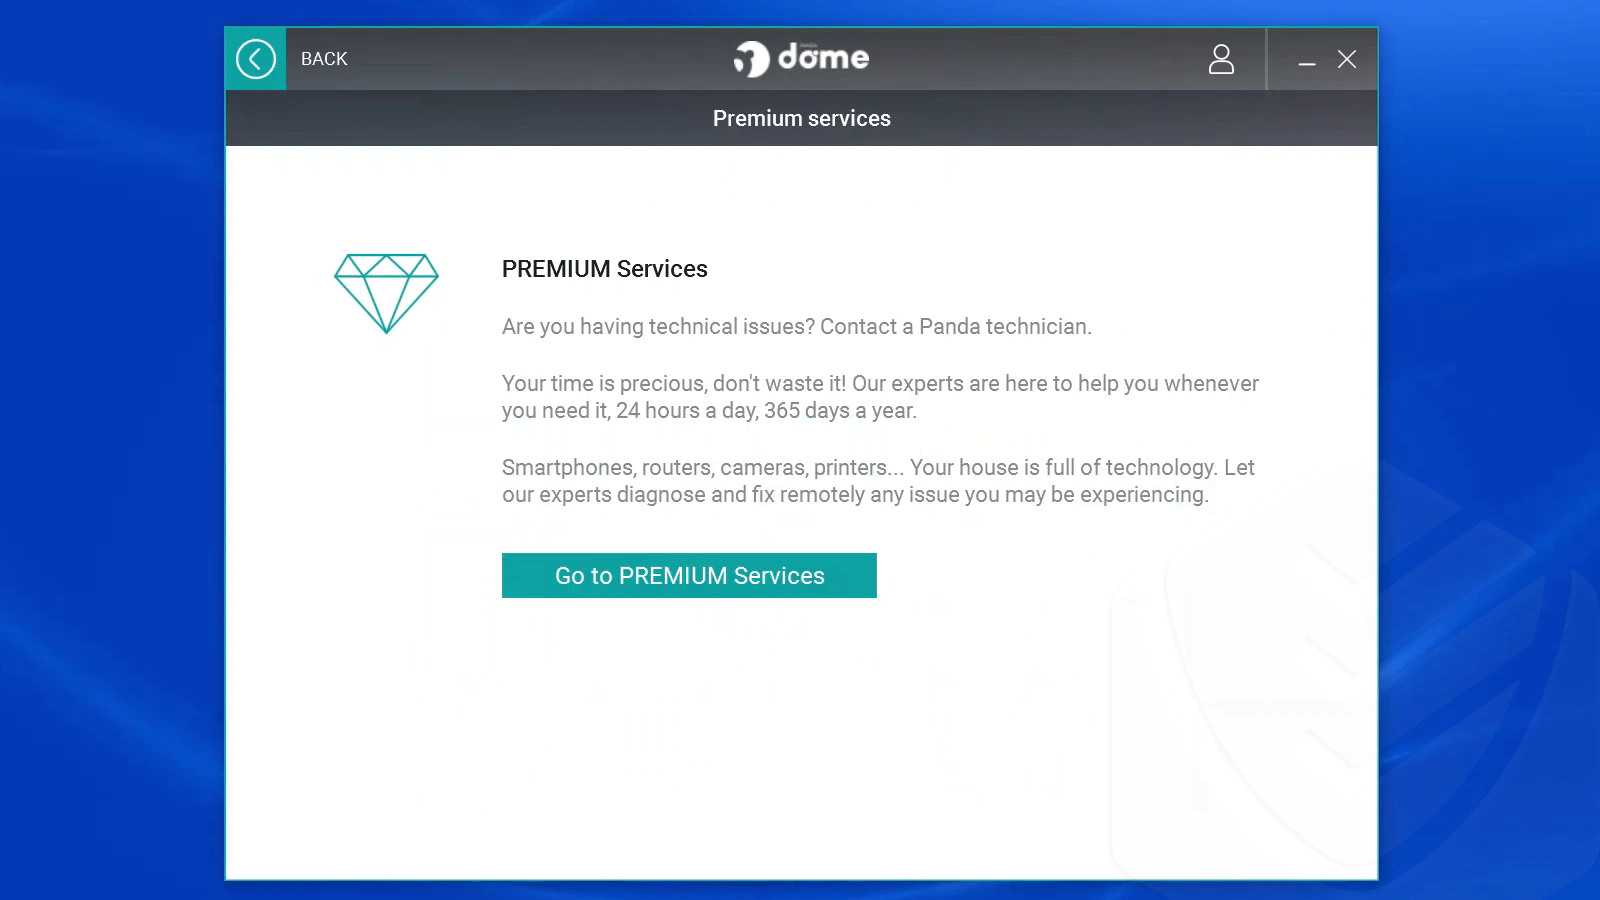 
Panda Premium Services